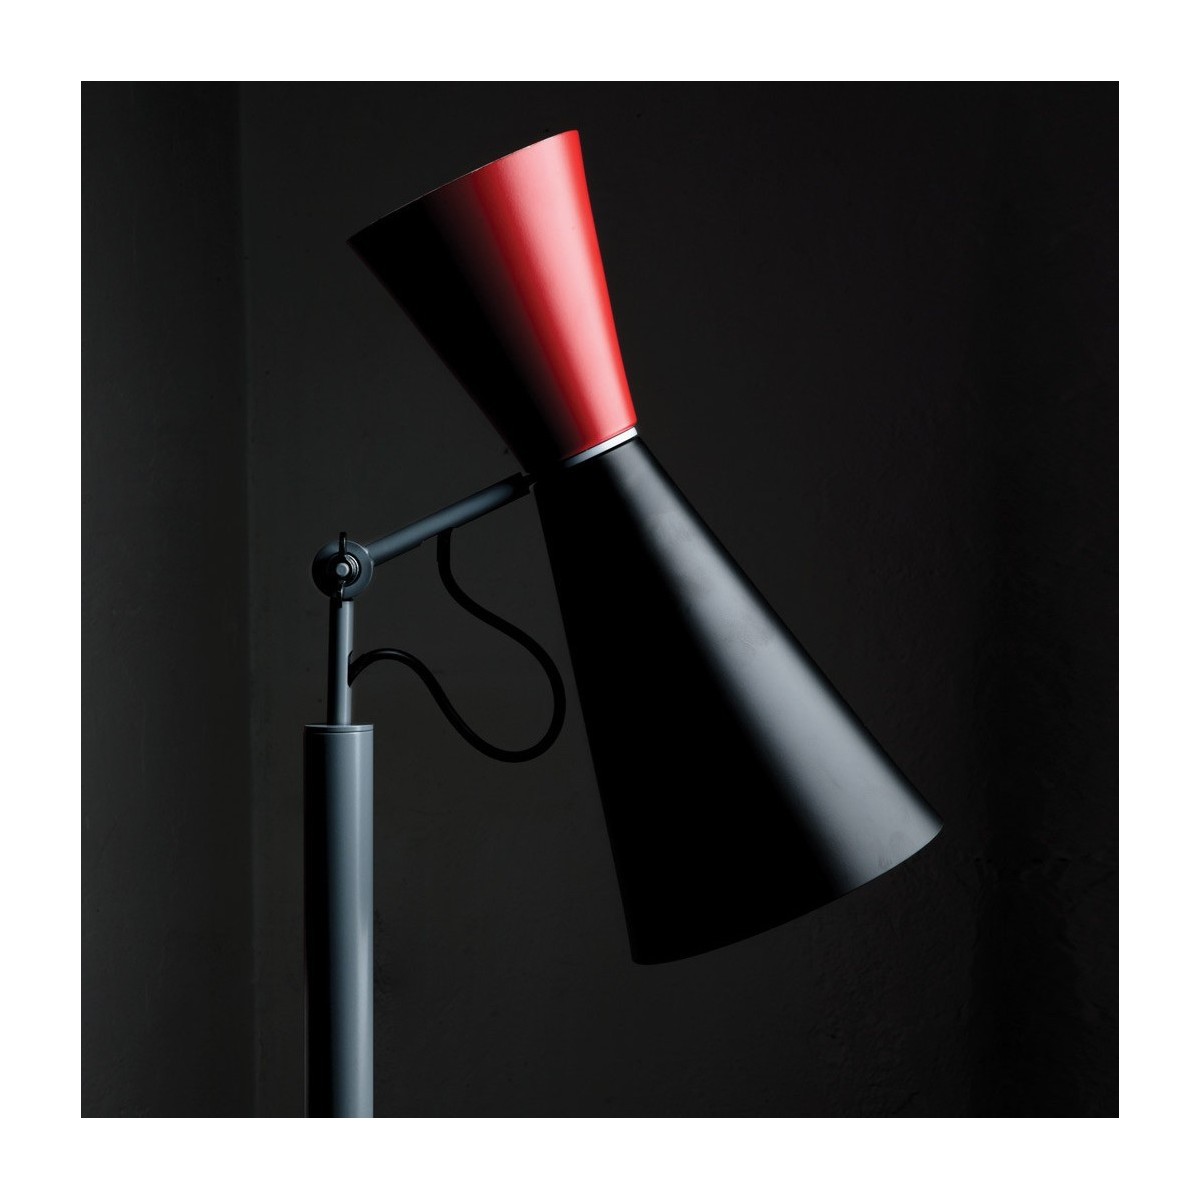 black/red - Parliament floor lamp